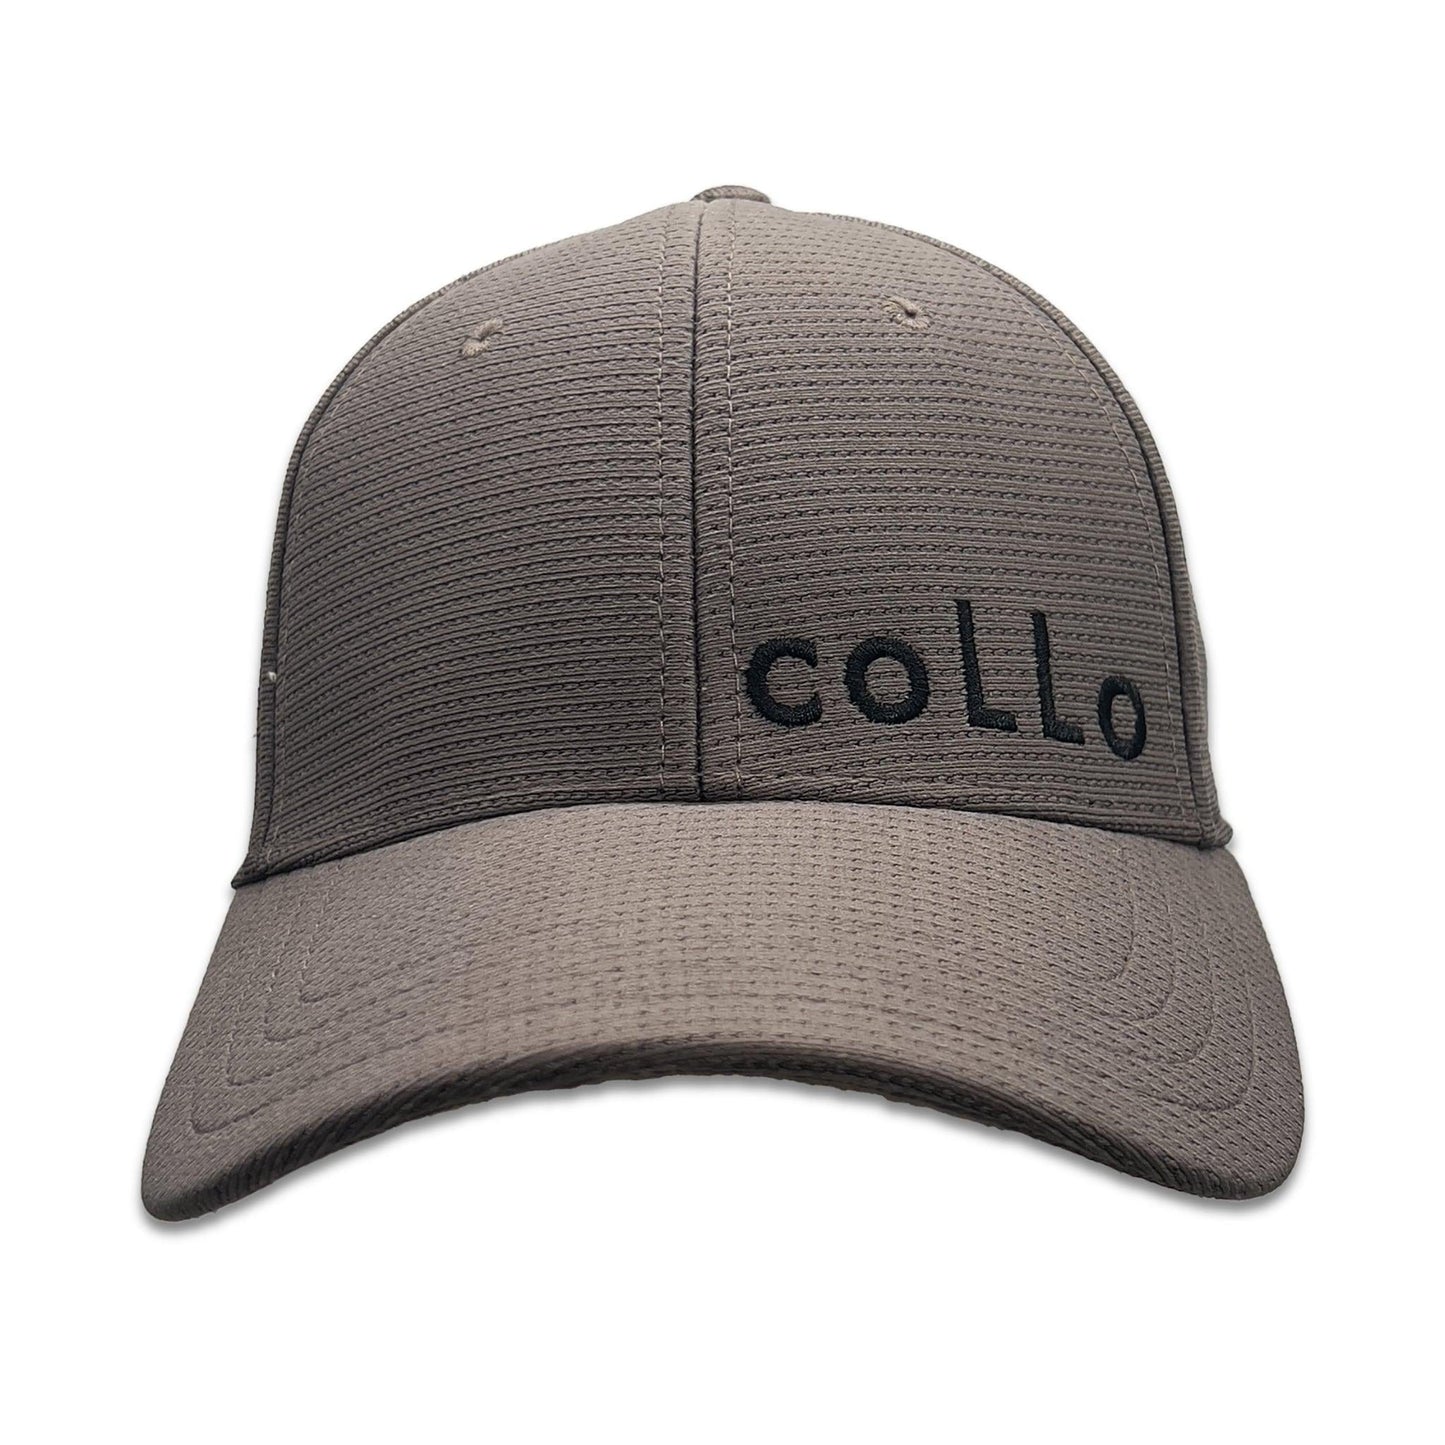 
                  
                    coLLo AppareL Hats S/M / GREY JAYDEN
                  
                